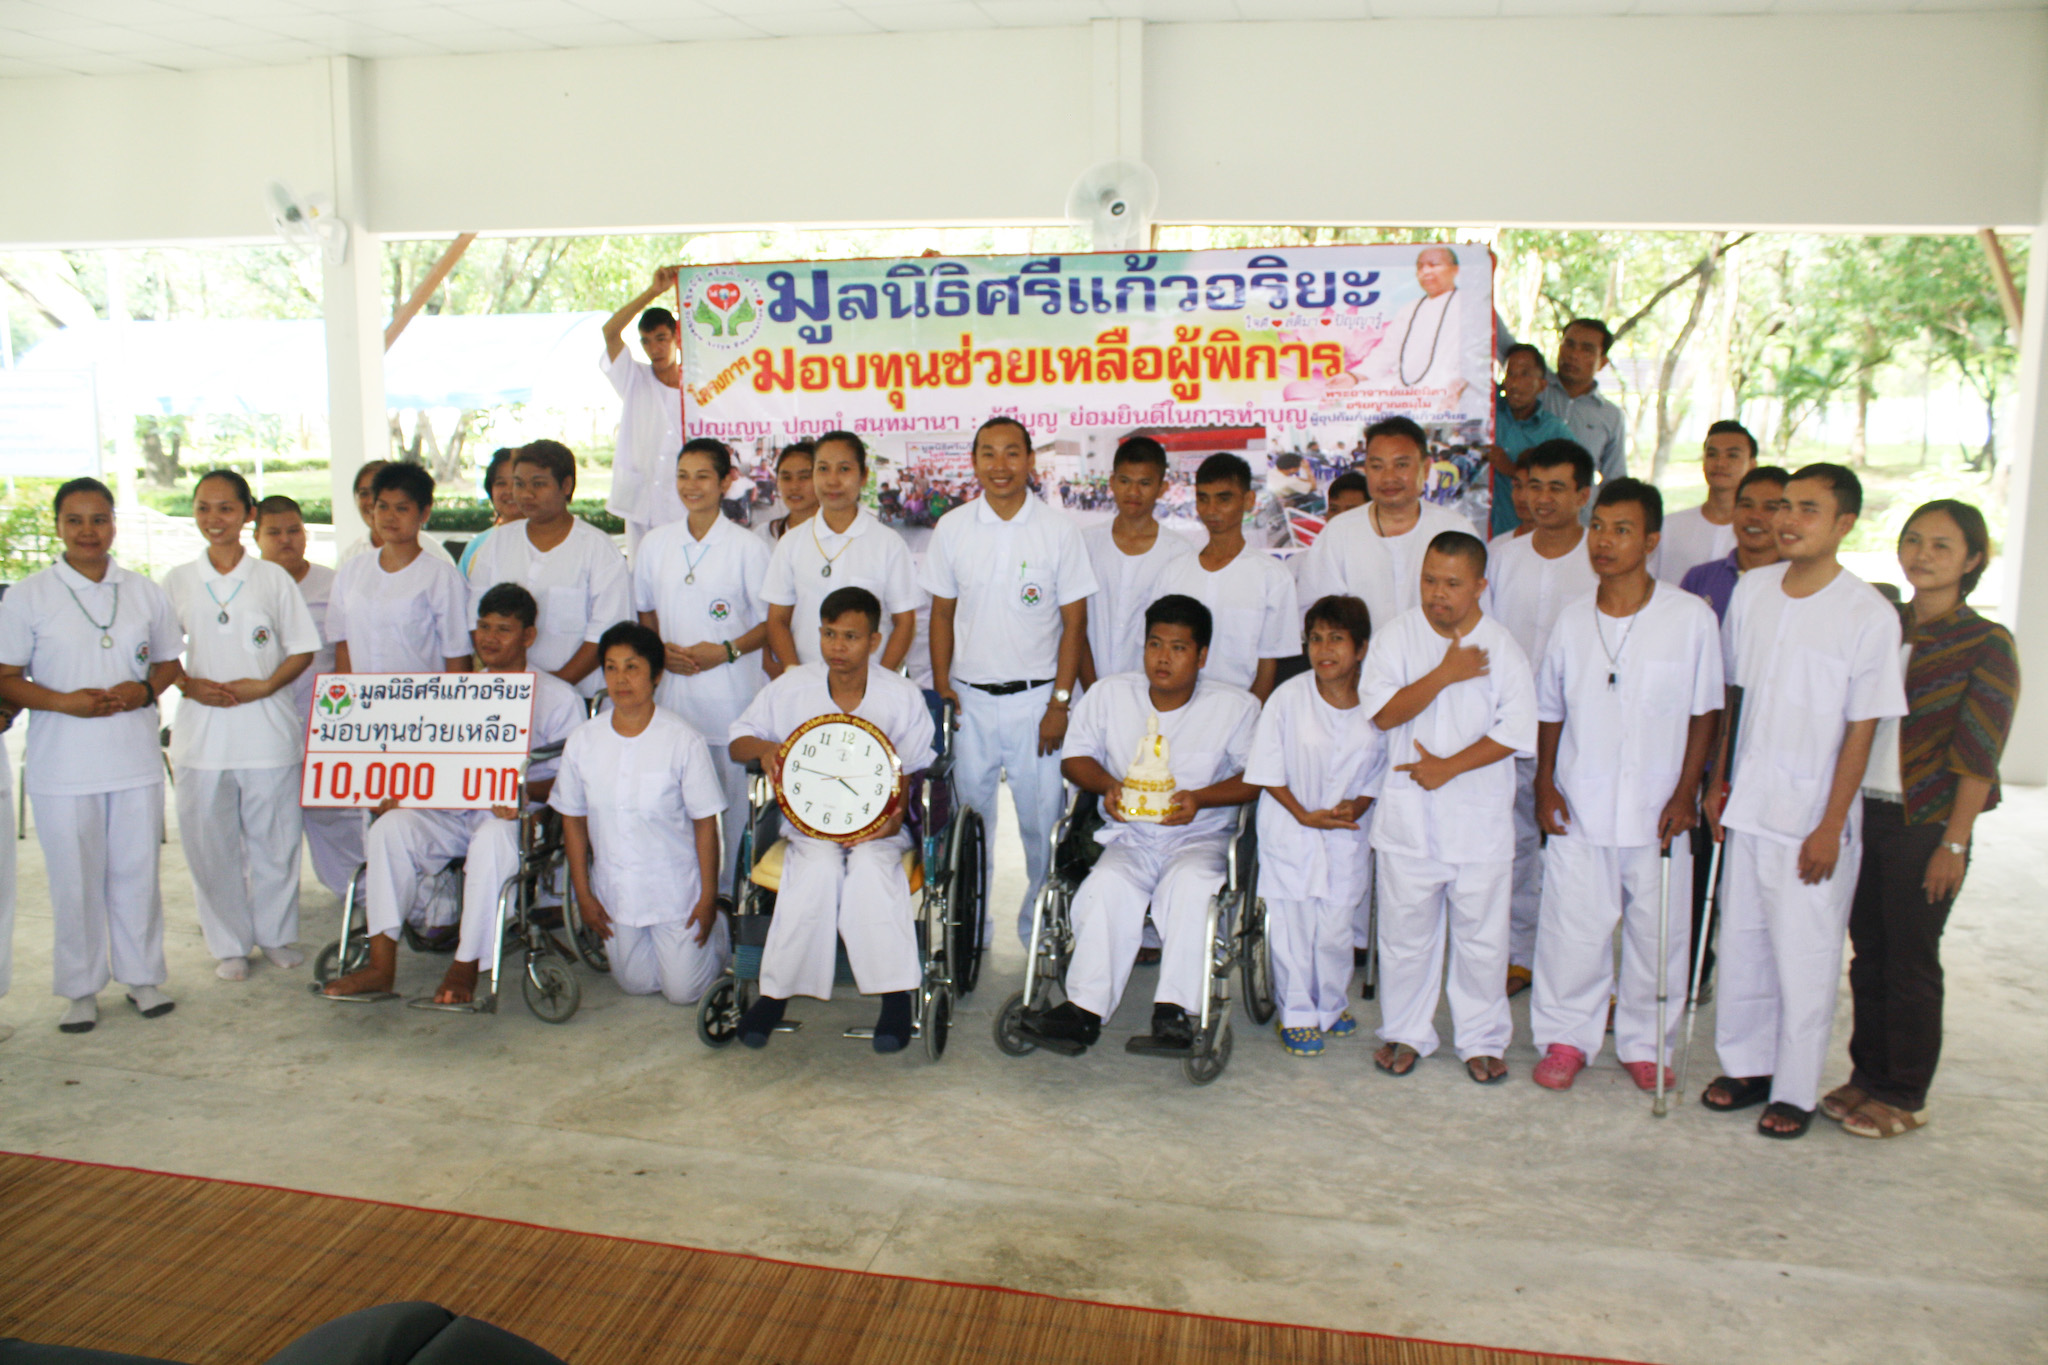 โครงการมอบทุนช่วยเหลือผู้พิการ  วันที่ 17 มิถุนายน 2559  ณ  สถานฟื้นฟูสมรรถภาพคนพิการ   ภาคตะวันออกเฉียงเหนือ  อุบลราชธานี